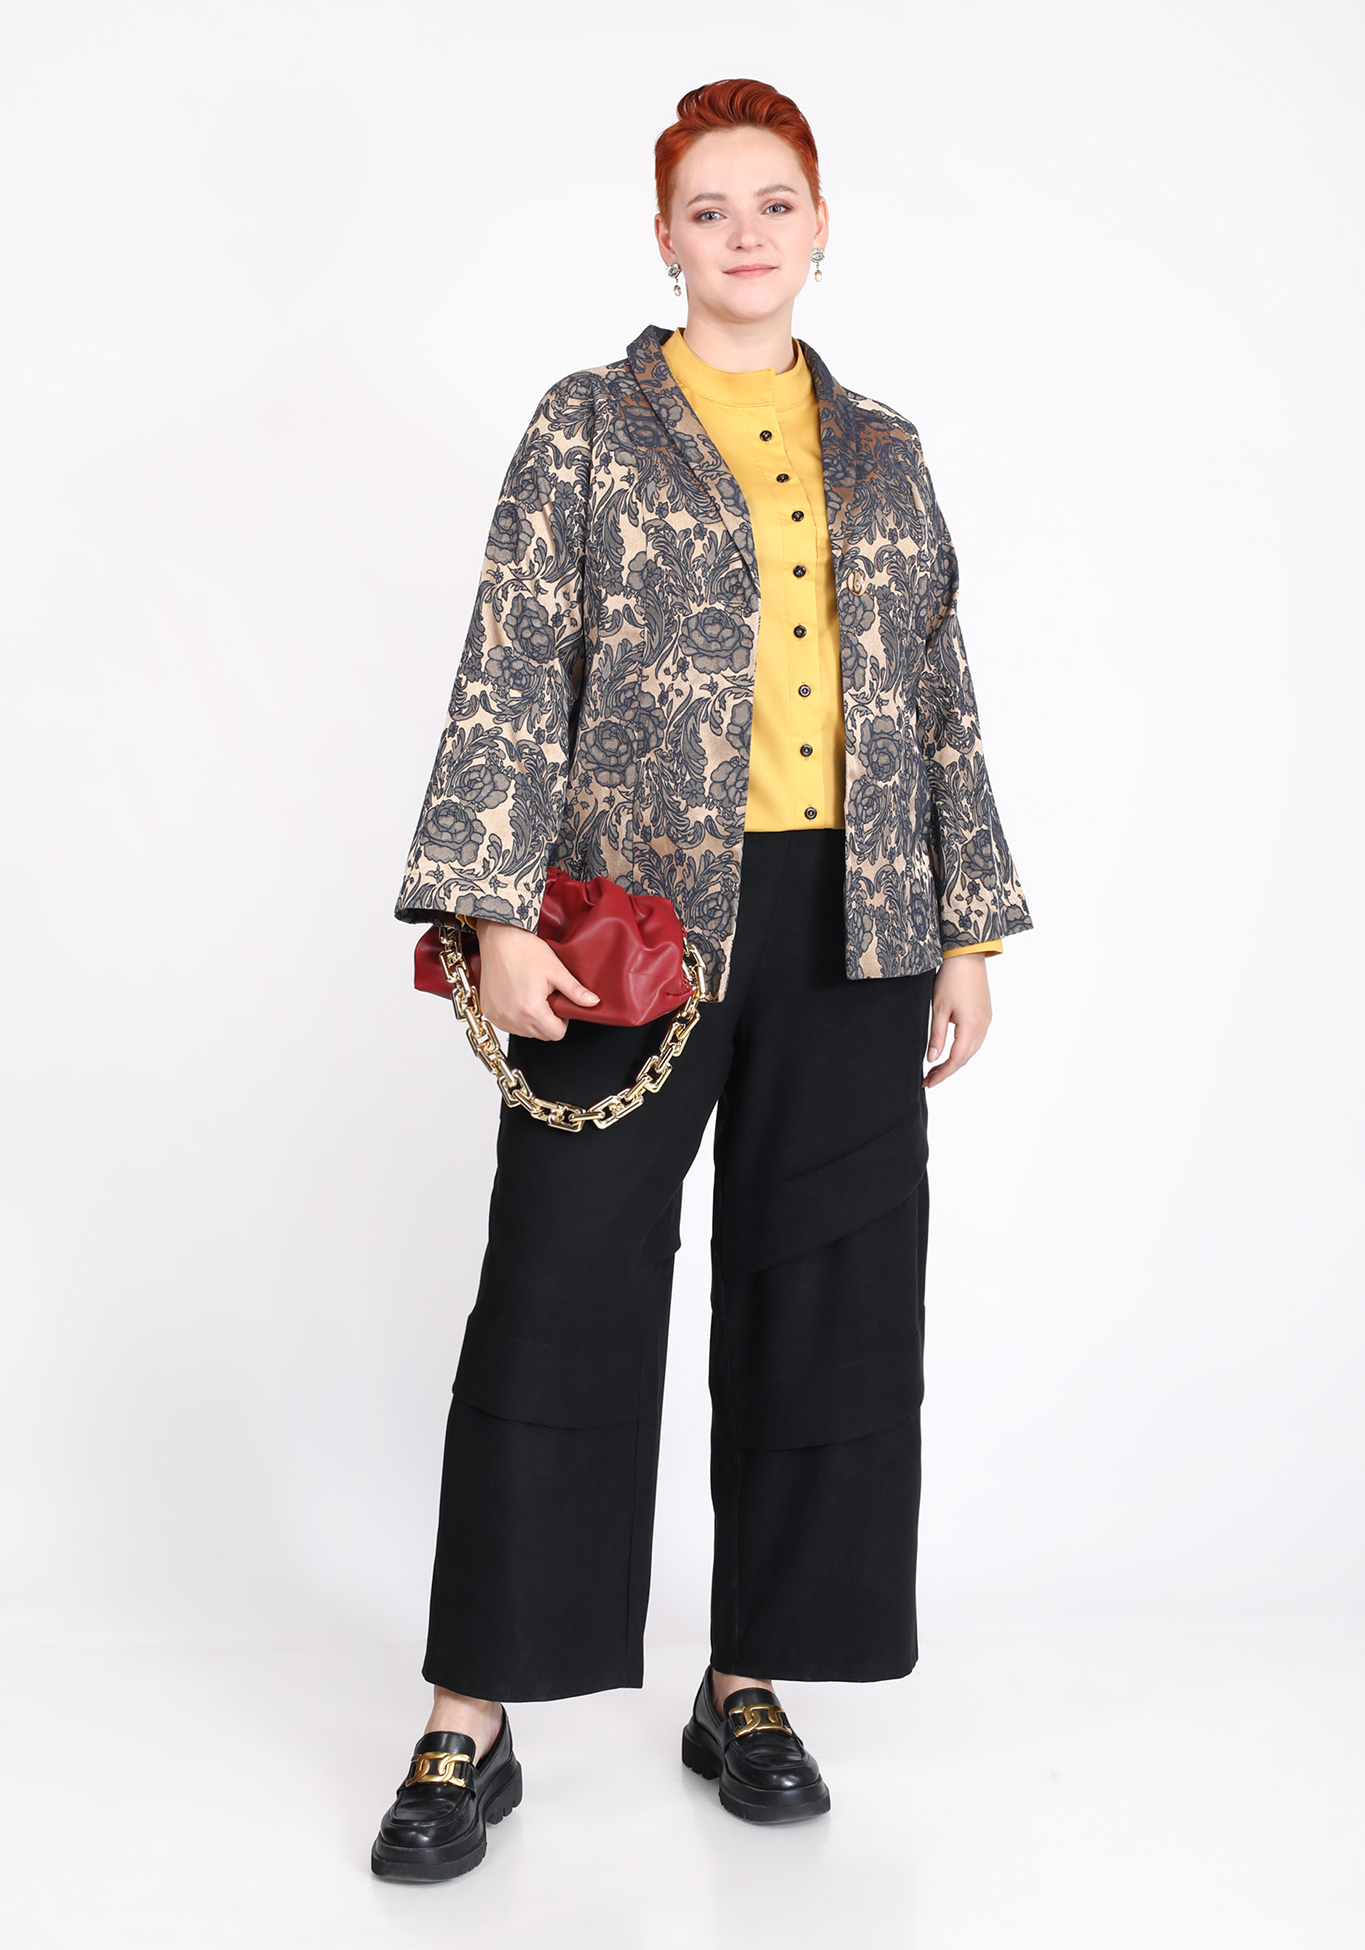 Жакет на пуговице с флористическим принтом Frida, размер 48, цвет золотистый - фото 5